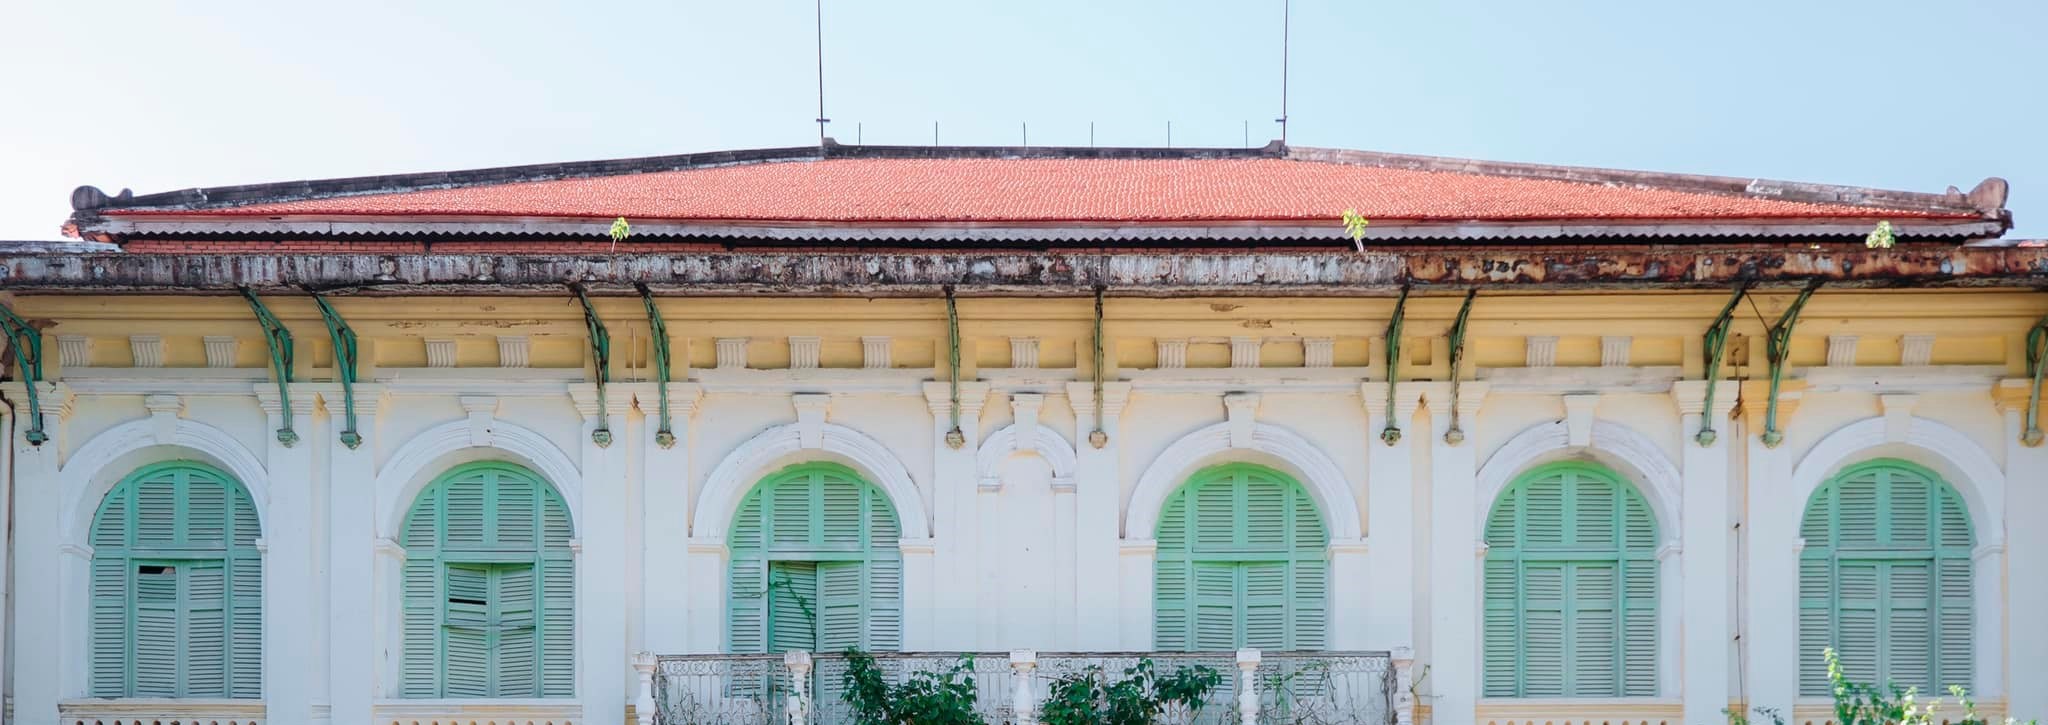 Check-in Dinh tỉnh trưởng Gò Công, điểm đến lịch sử mang kiến trúc độc đáo